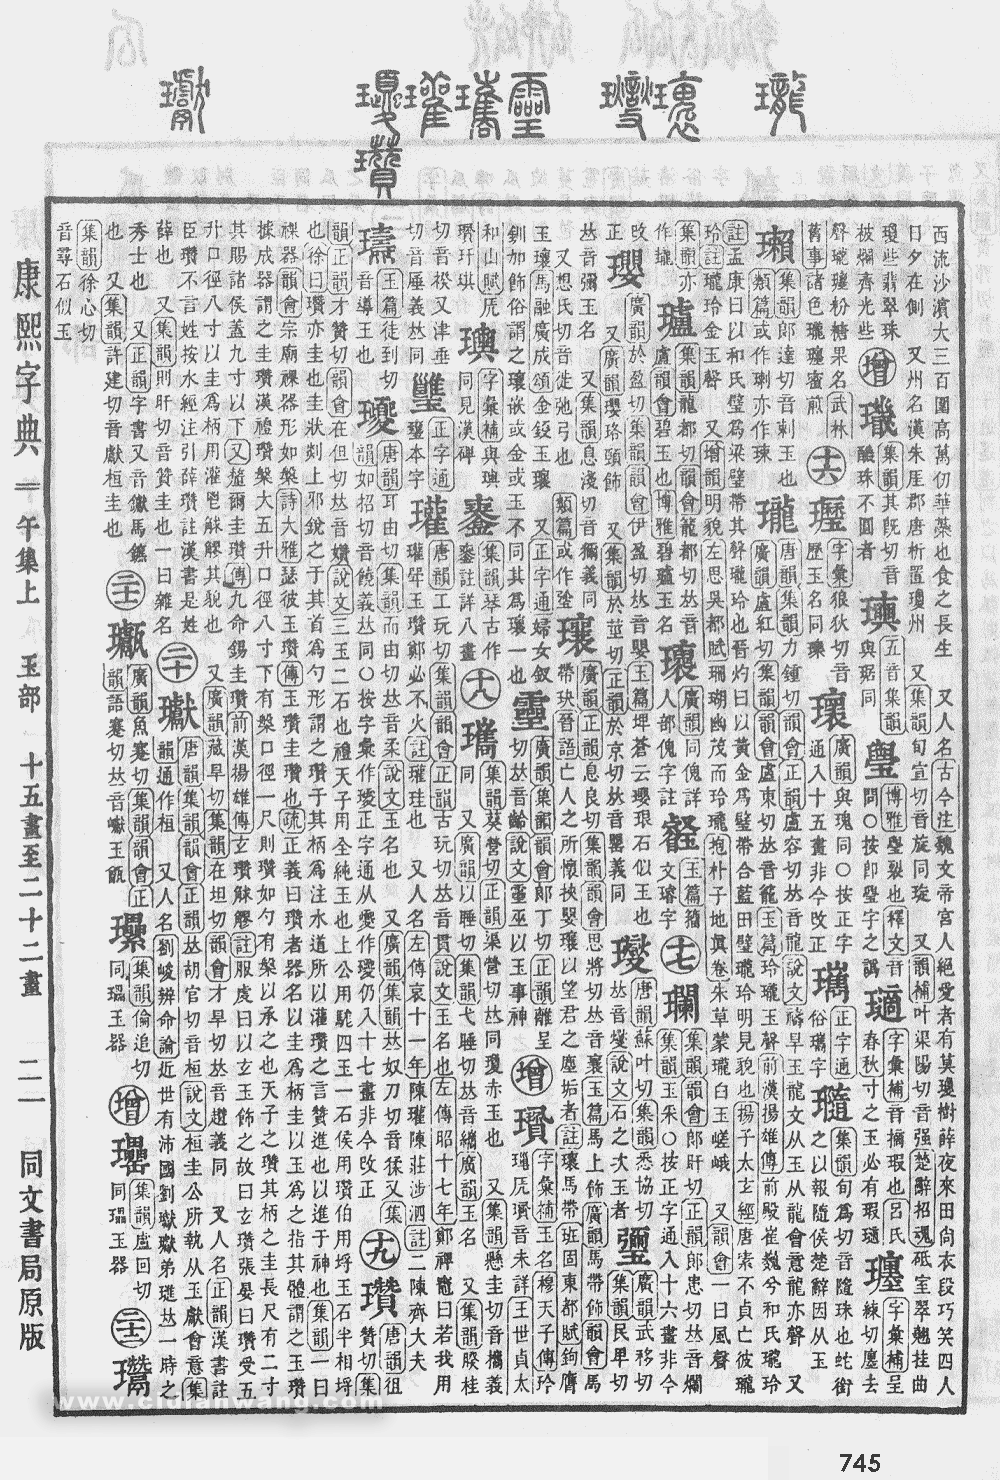 康熙字典掃描版第745頁